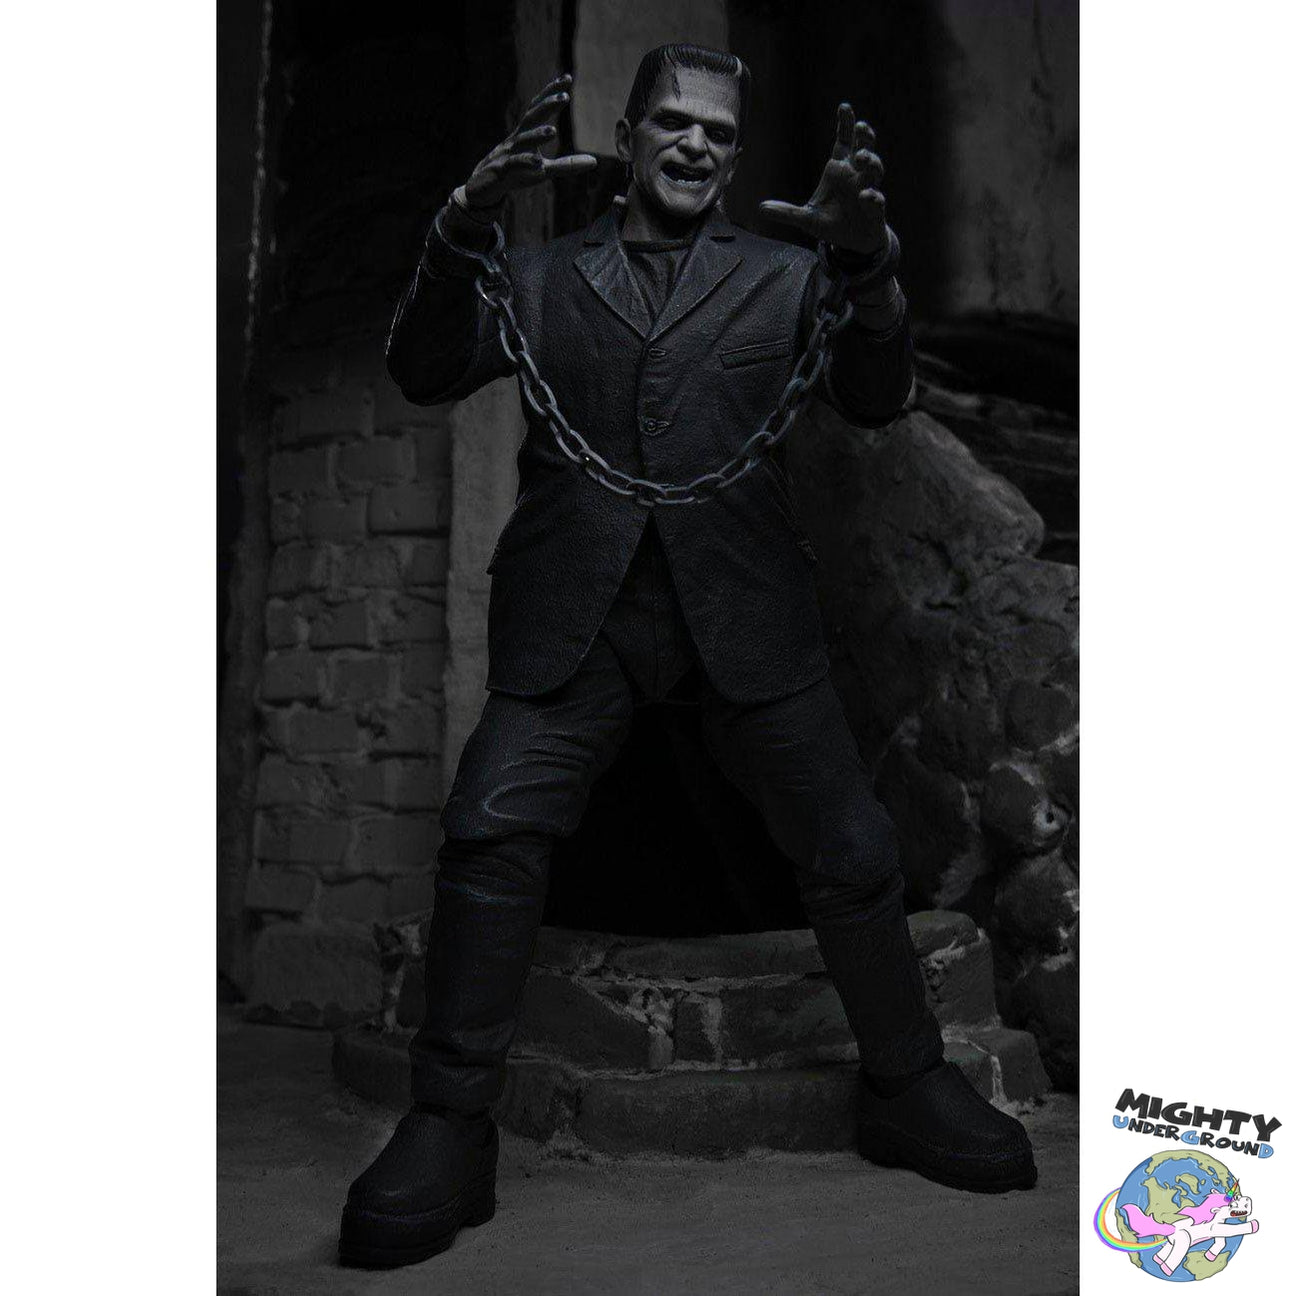 Universal Monsters: Ultimate Frankenstein's Monster (Black & White) VORBESTELLUNG!-Actionfiguren-NECA-Mighty Underground